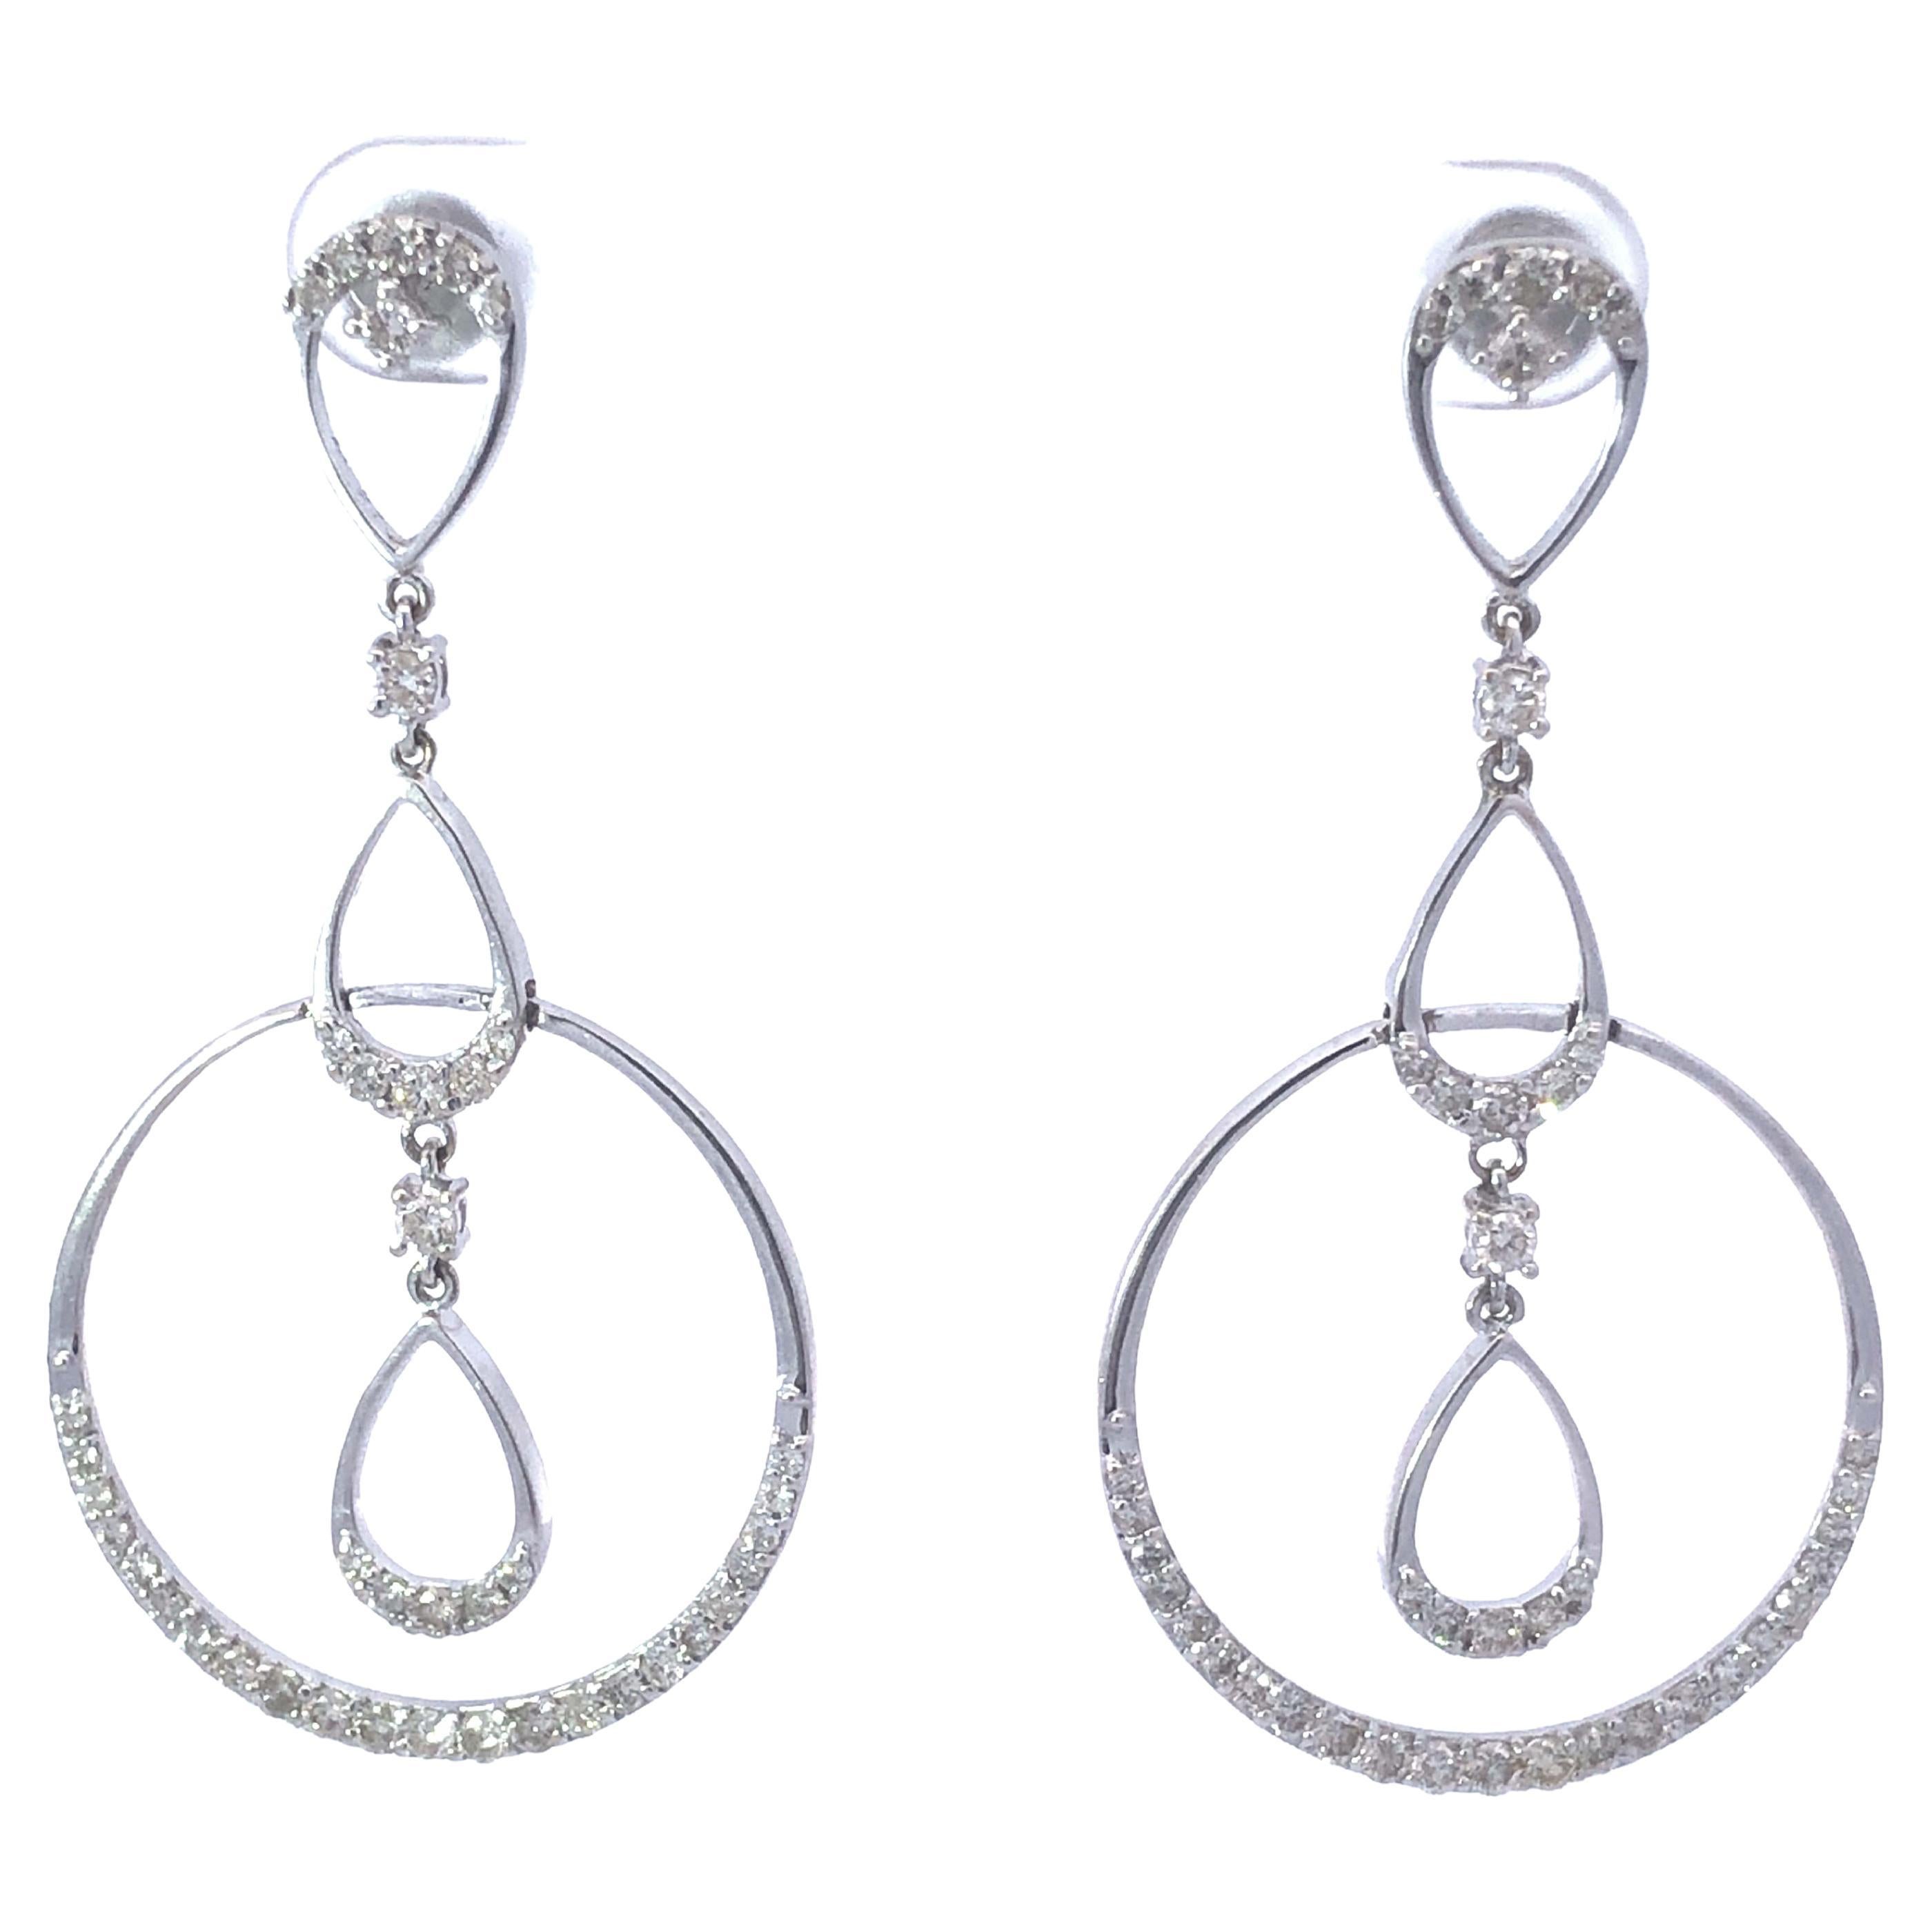 Triple Drop Dangly Diamond Earrings in 18k White Gold